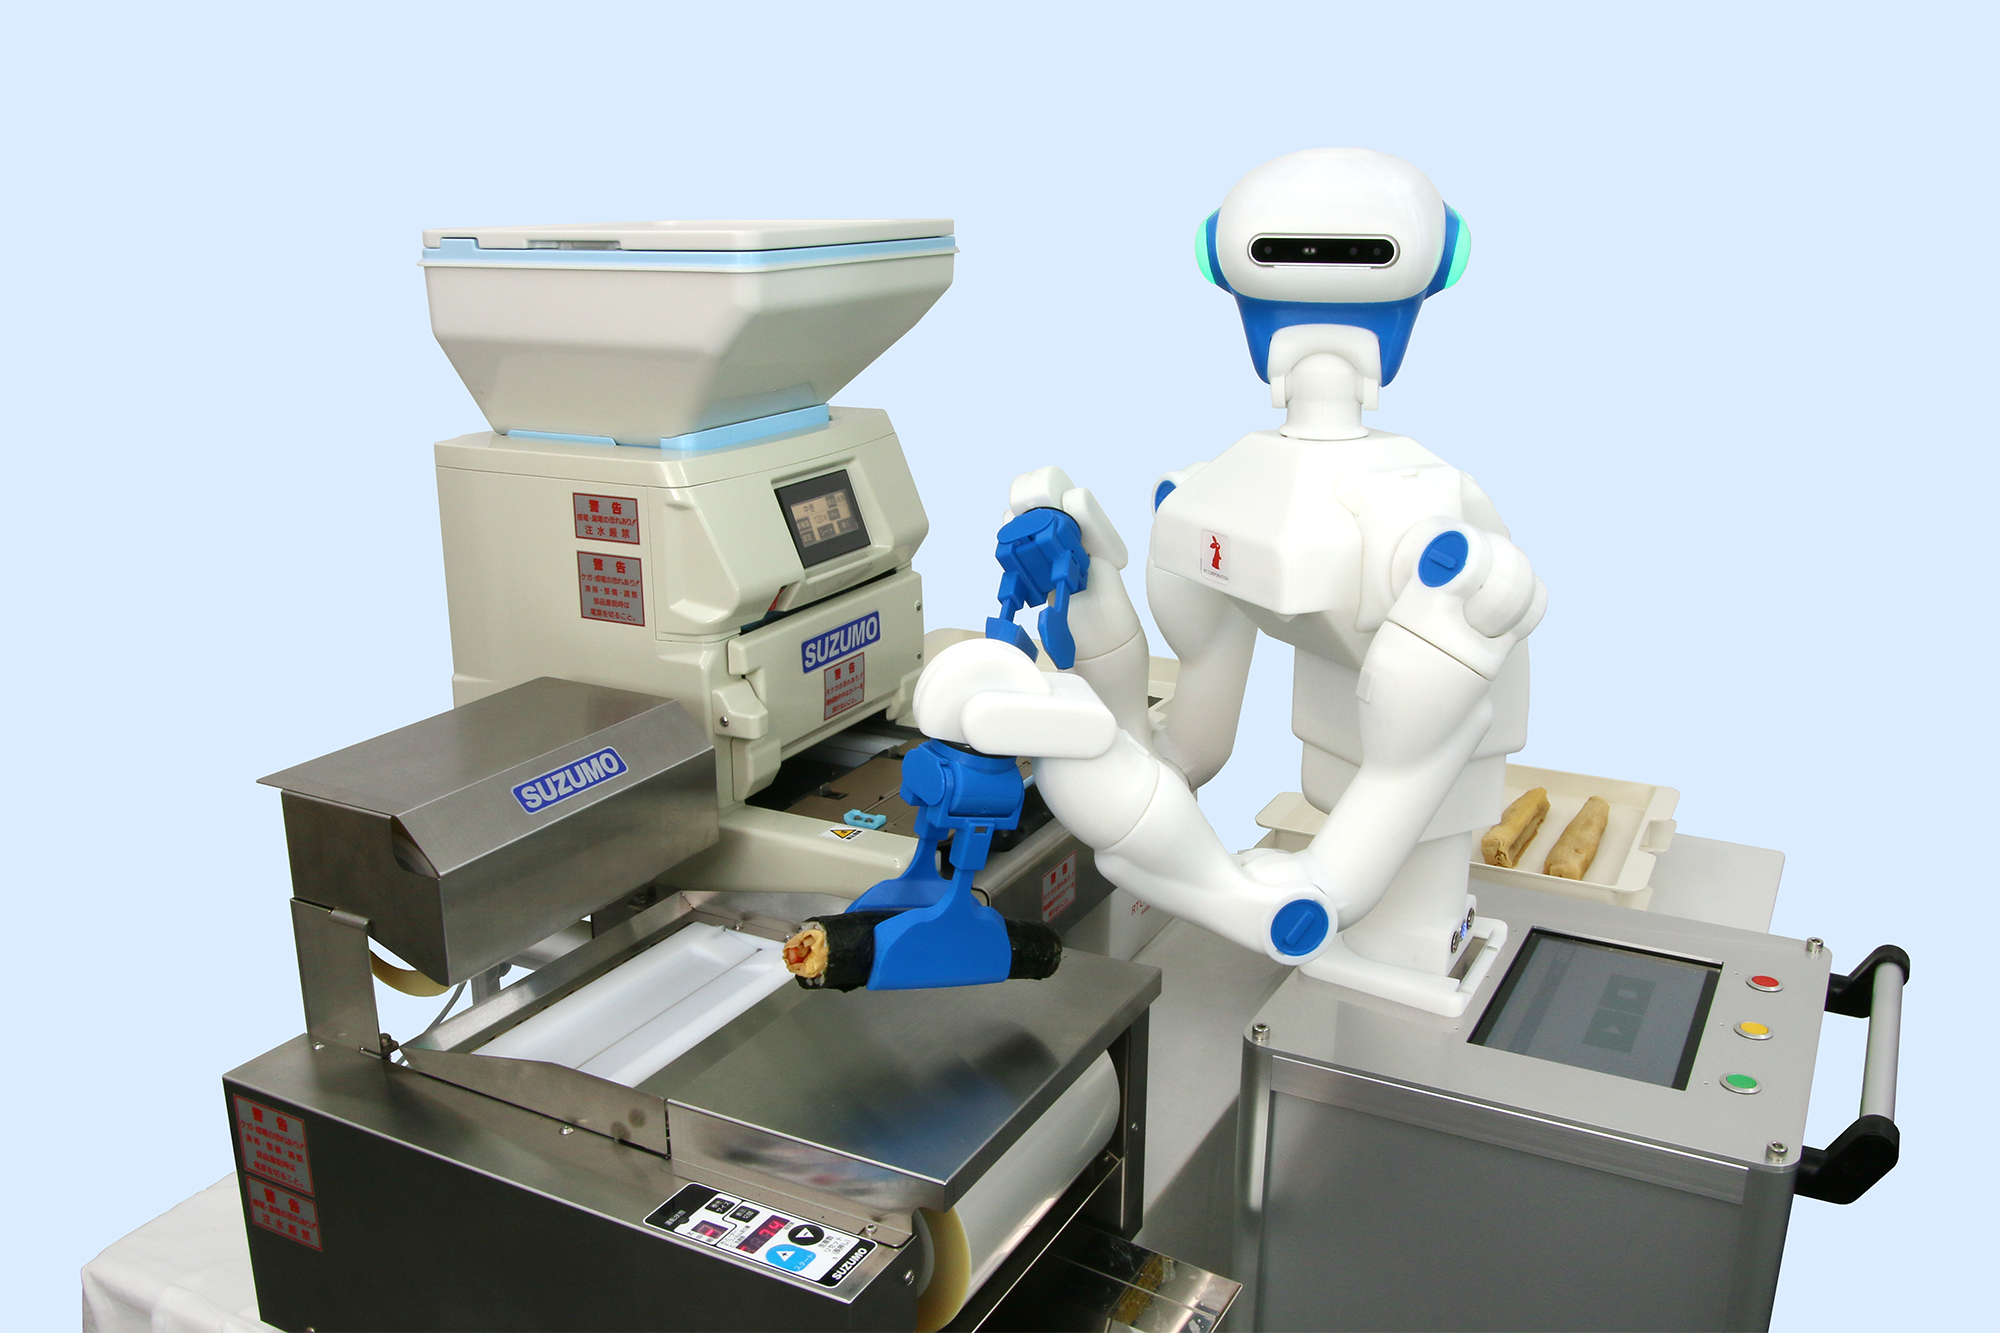 巻き寿司製造の全自動化を可能にする人型協働ロボット「Foodly スズモコラボモデル」が誕生